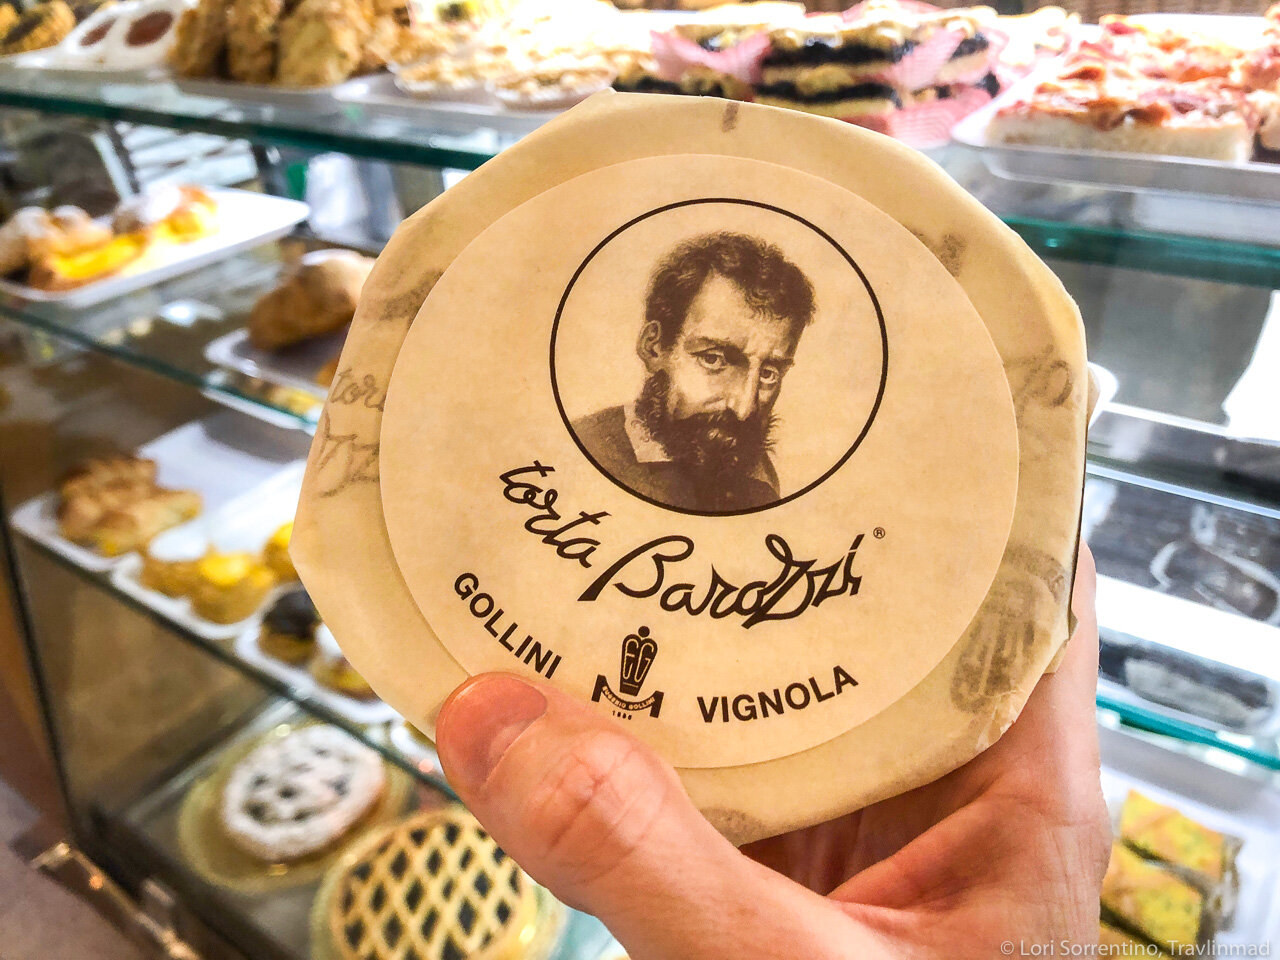 The original Torta Barozzi from Pasticceria Gollini in Vignola